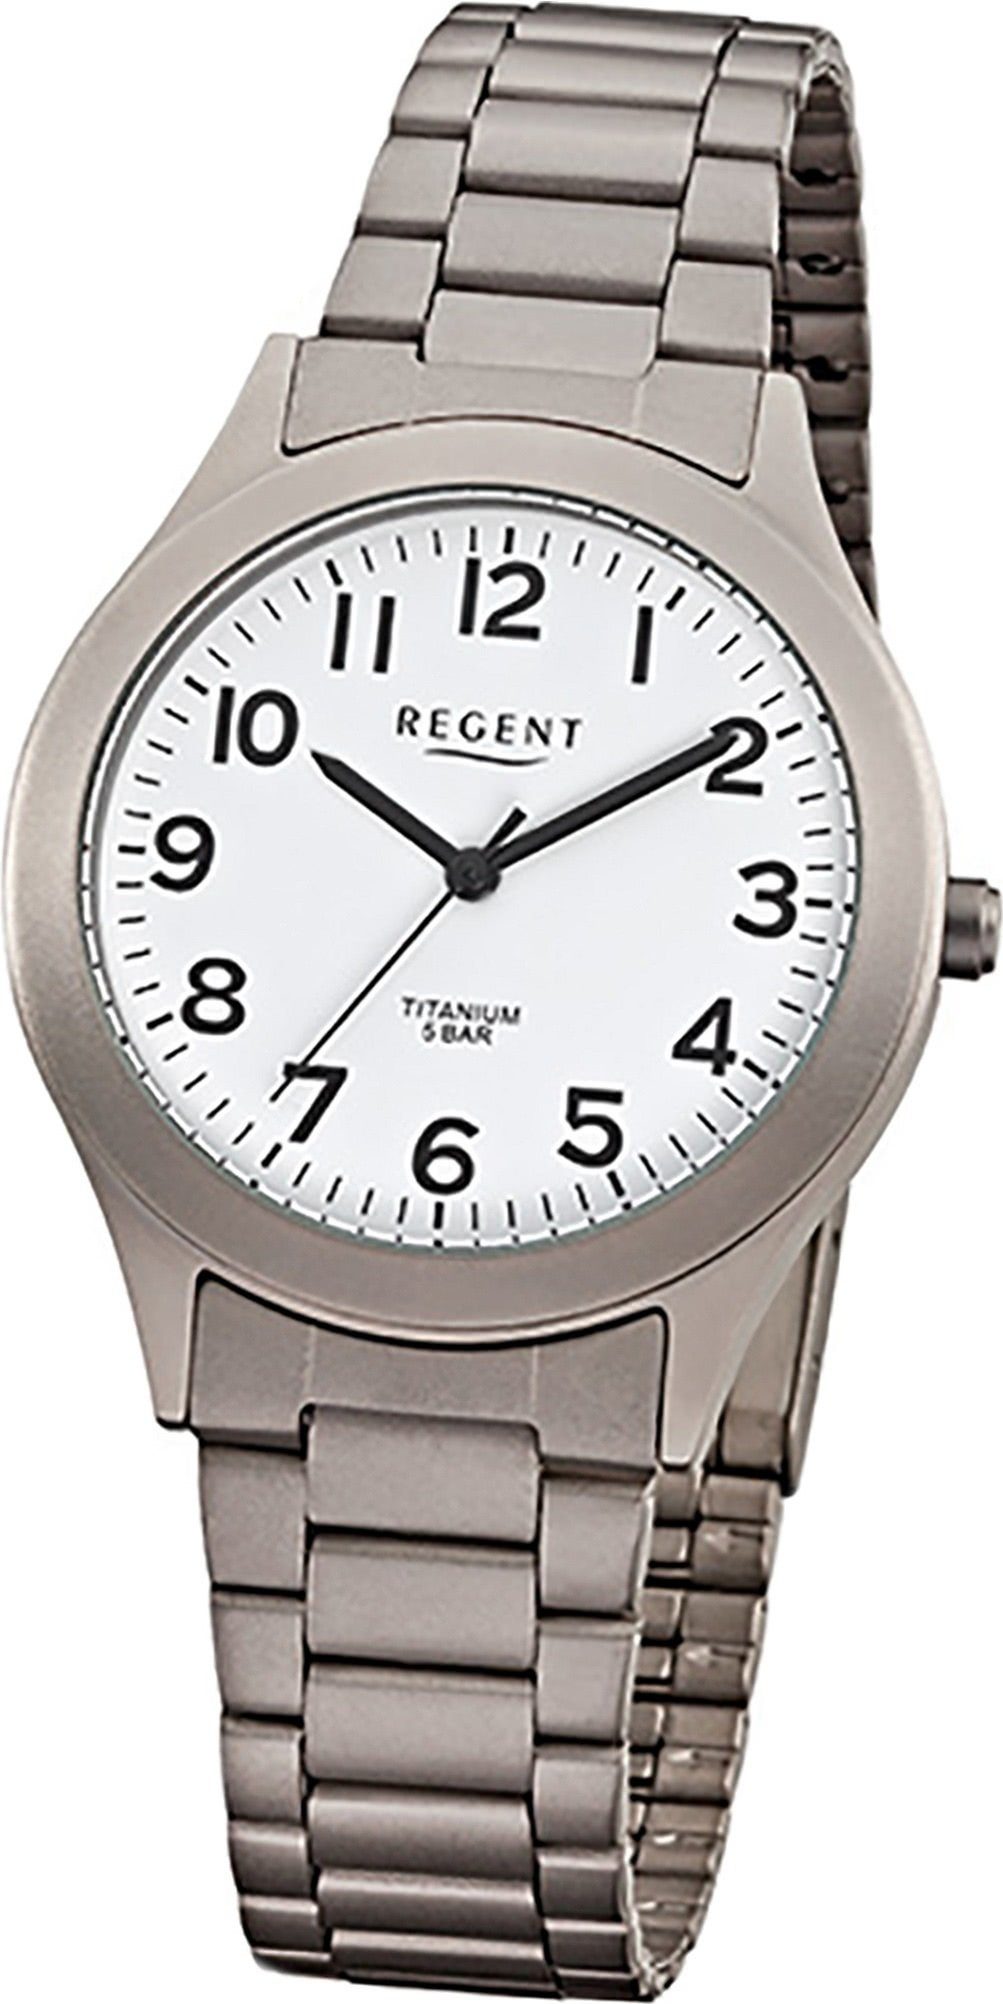 Regent Quarzuhr Regent Titan (Metall) Herren Uhr F-837, Herrenuhr mit Titanarmband, rundes Gehäuse, mittel (ca. 36mm), Elegant